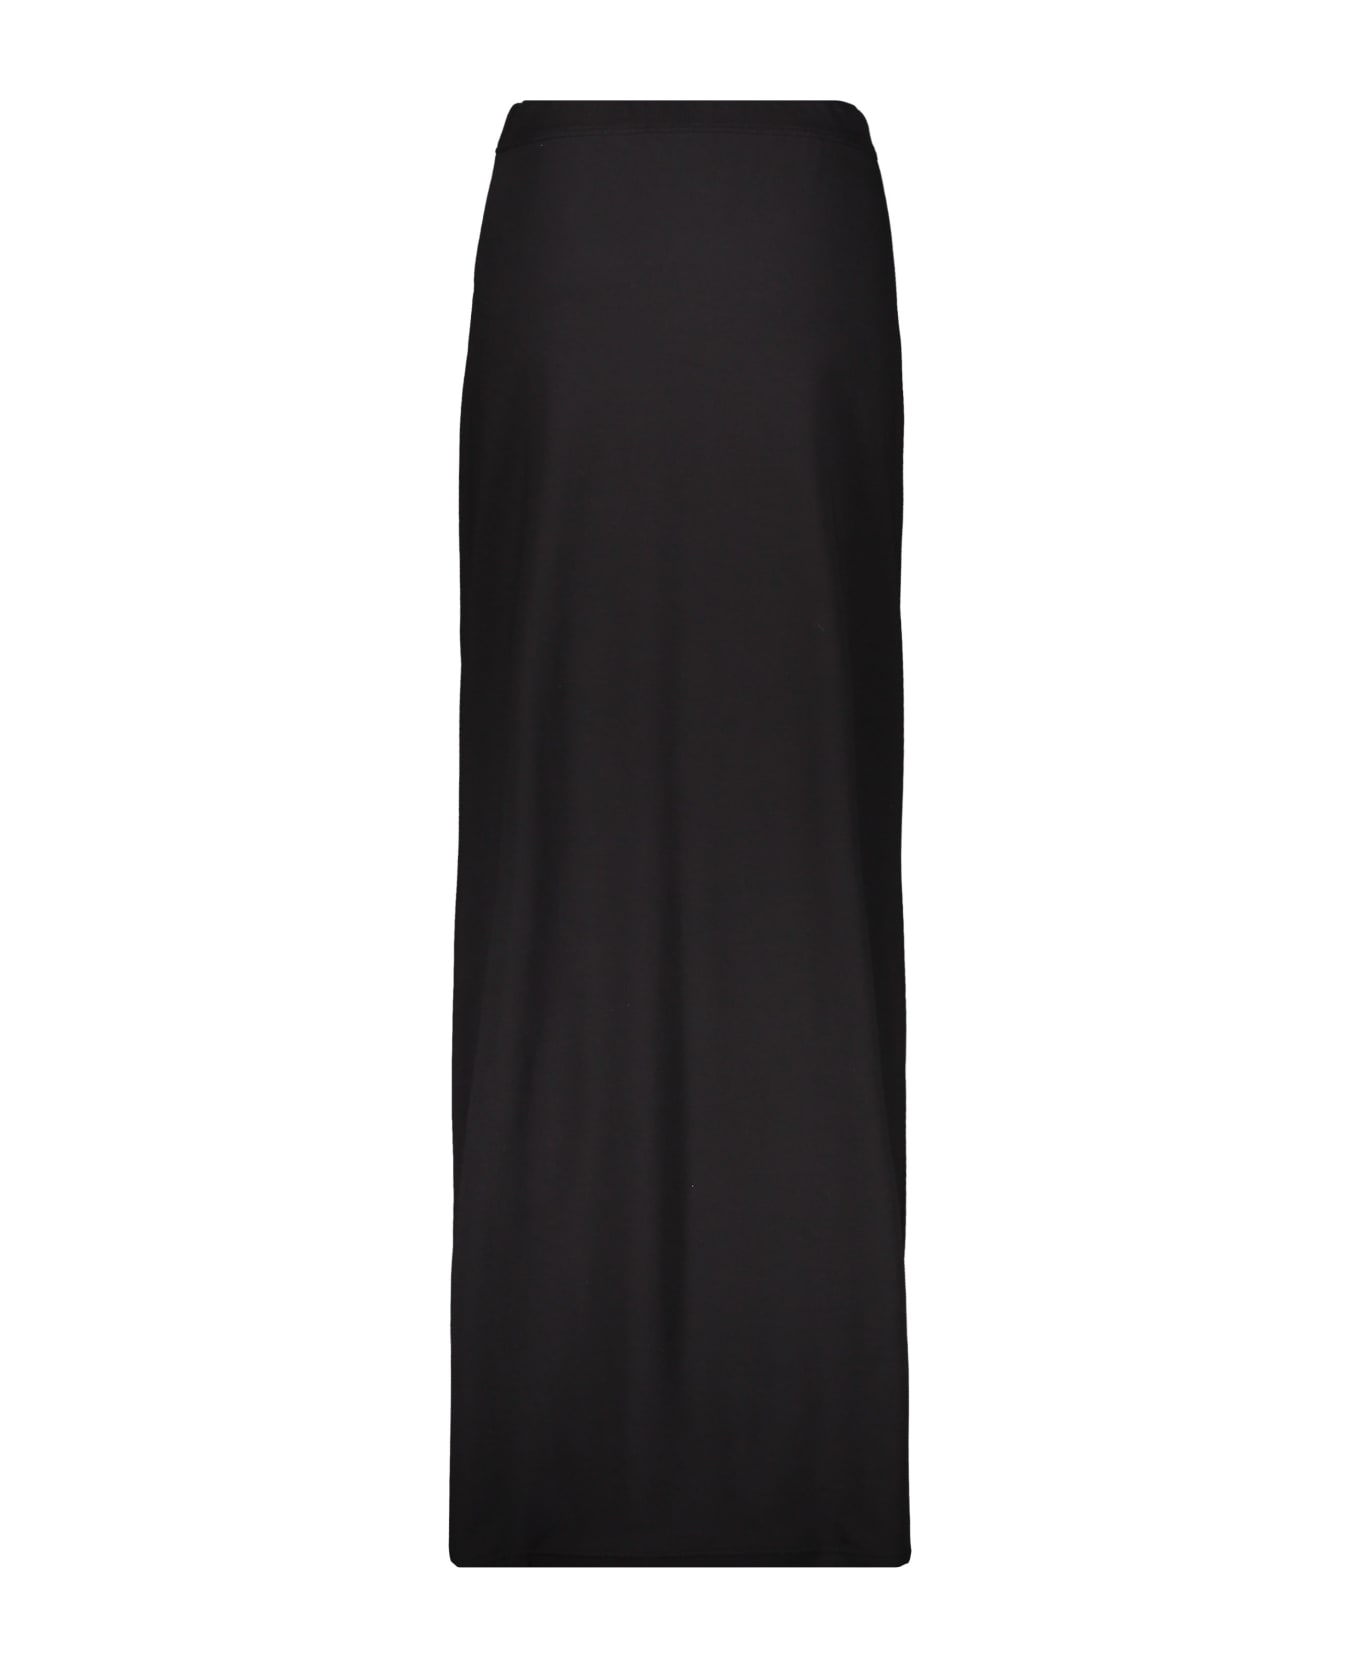 Burberry Long Skirt - black スカート